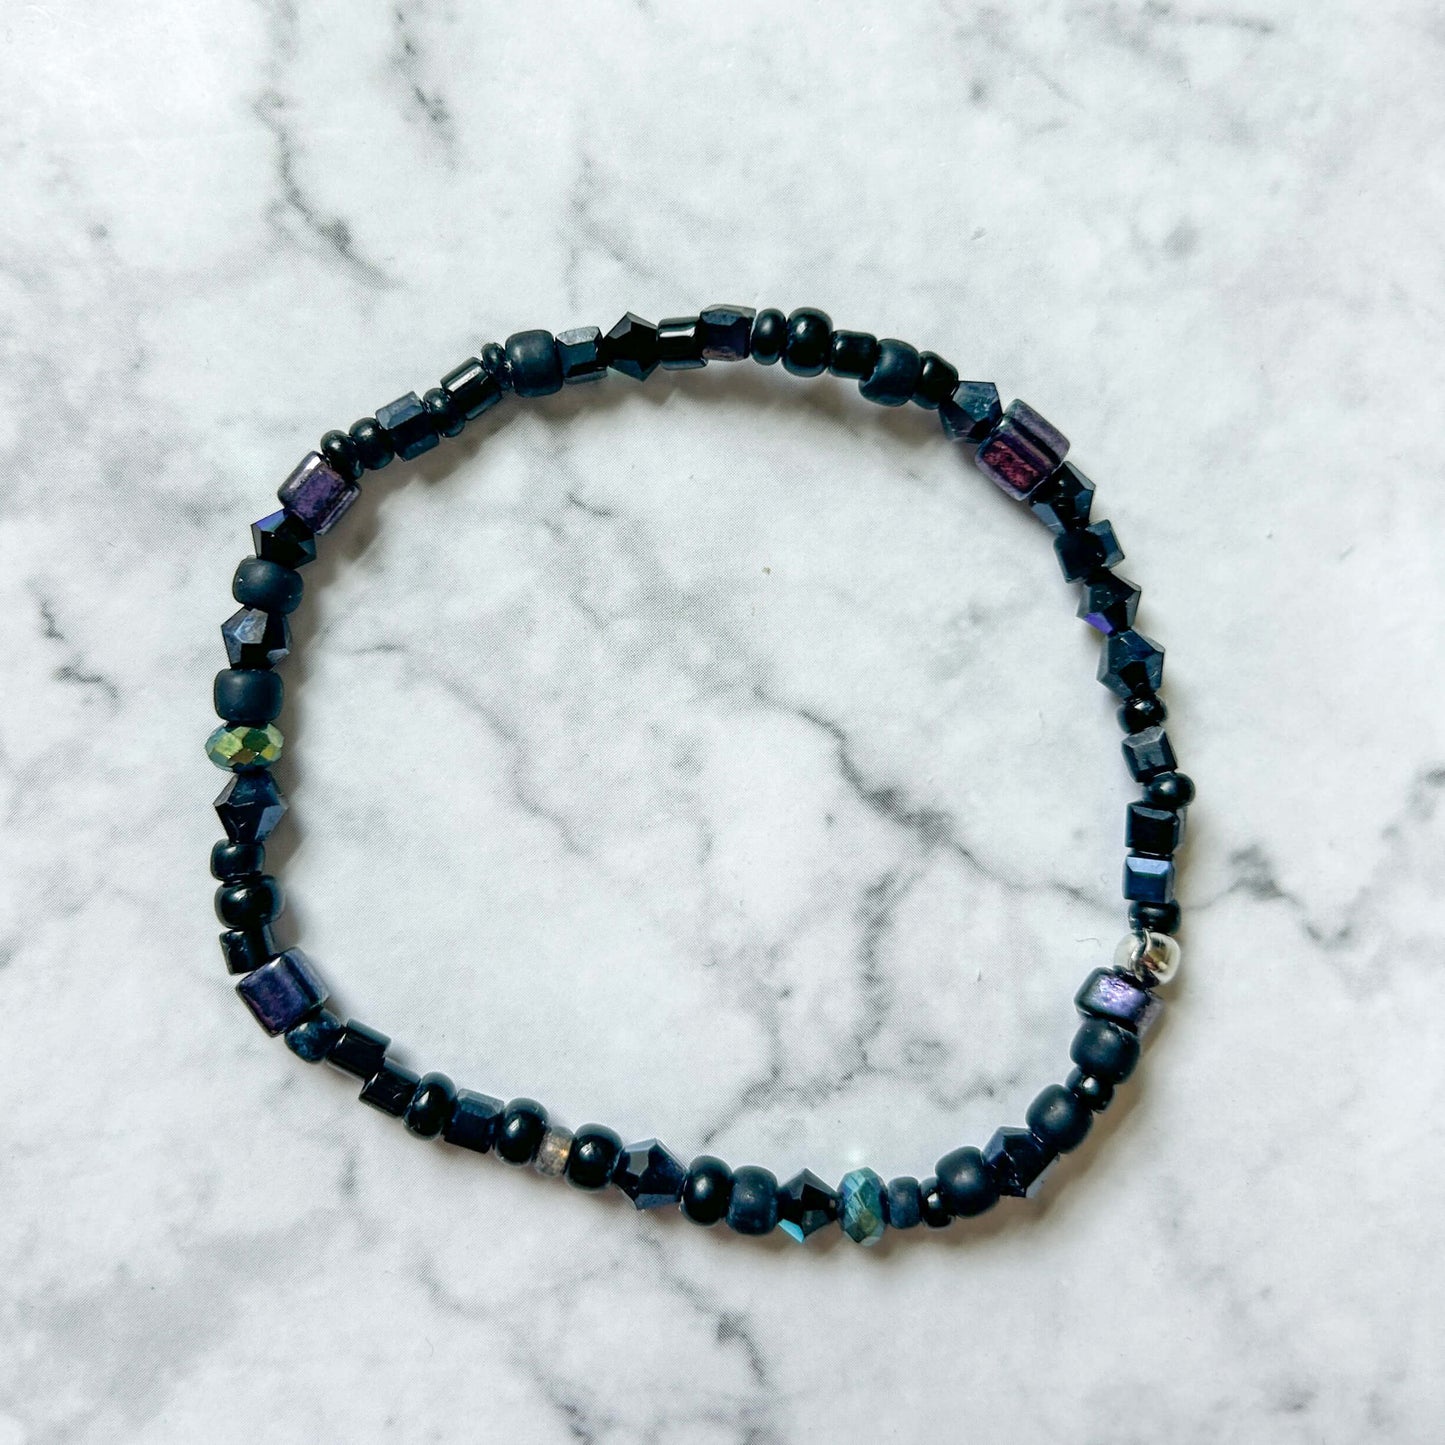 Beaded stretch bracelets